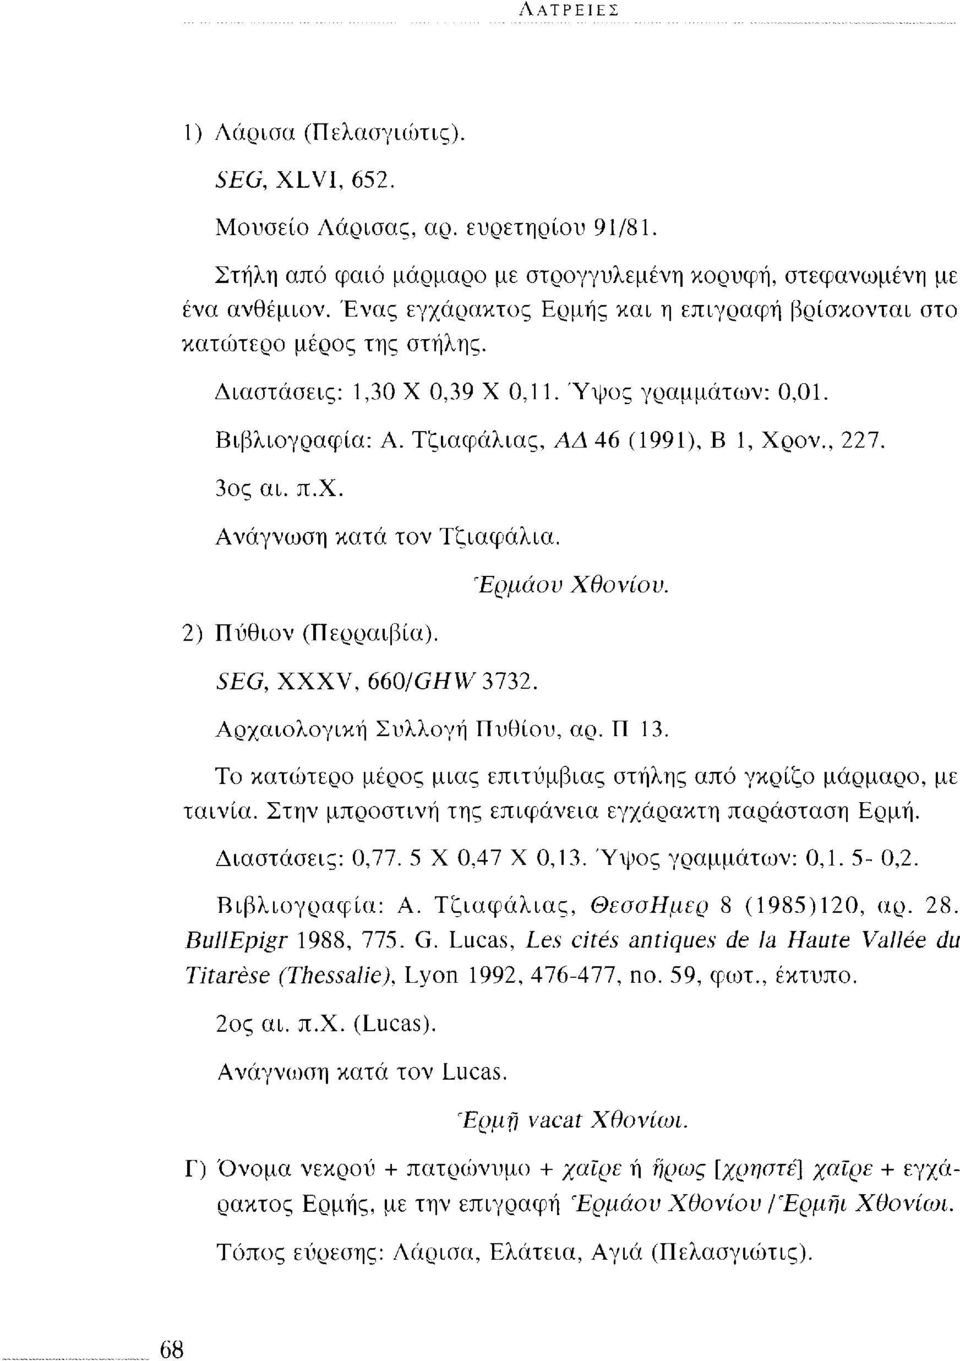 π.χ. Ανάγνωση κατά τον Τζιαφάλια. 2) Πύθιον (Περραιβία). Έρμάου SEG, XXXV, 660/GHW3132. Χθονίου. Αρχαιολογική Συλλογή Πυθίου, αρ. Π 13.